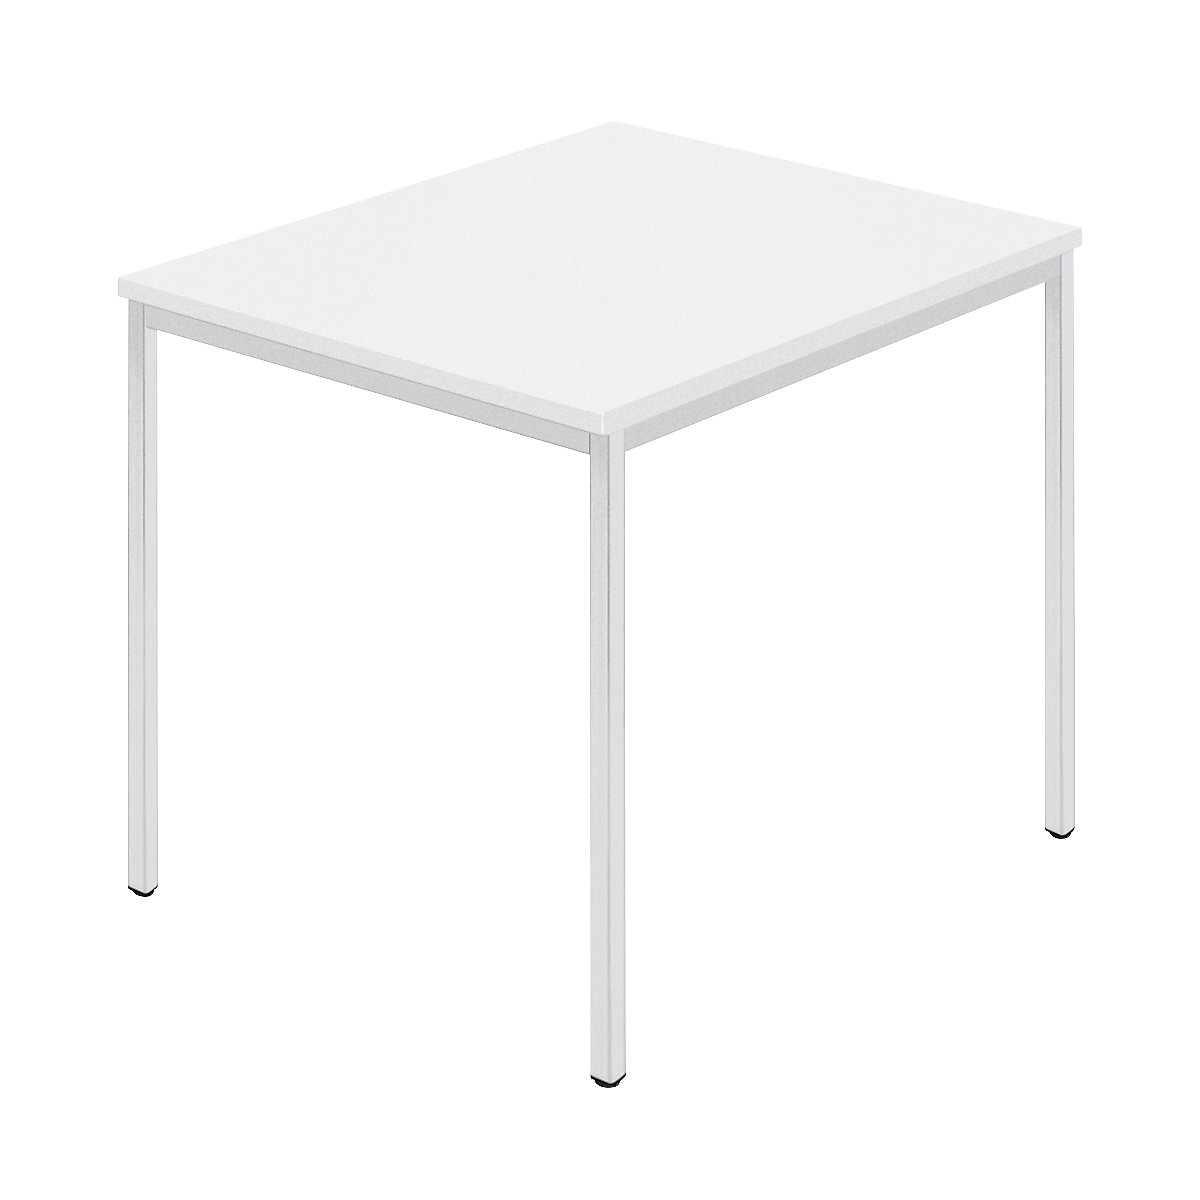 Rechthoekige tafel, vierkante buis met coating, b x d = 800 x 800 mm, wit / grijs-6